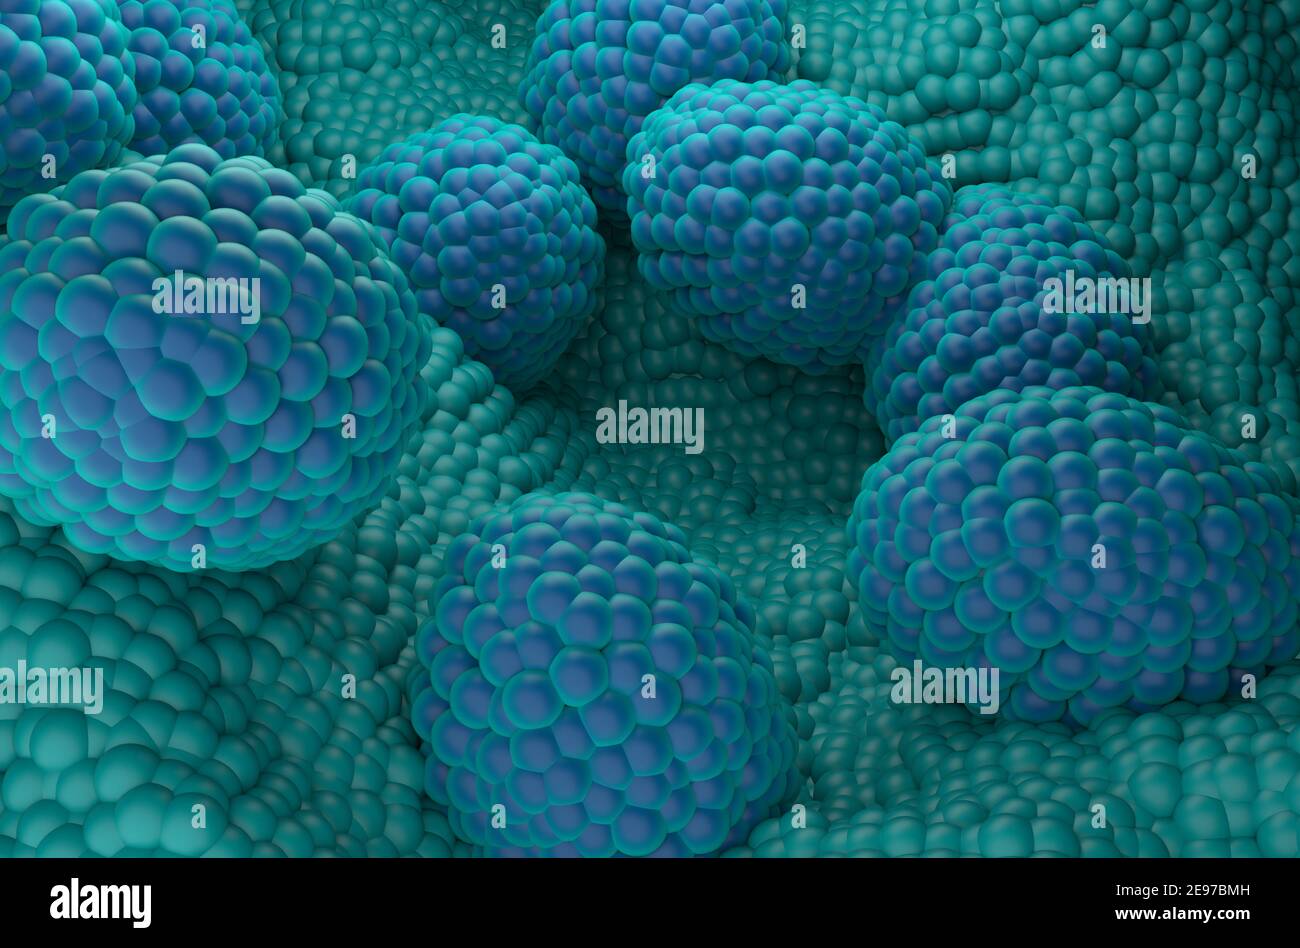 Visualizzazione isometrica dell'illustrazione 3d delle cellule tumorali della prostata Foto Stock